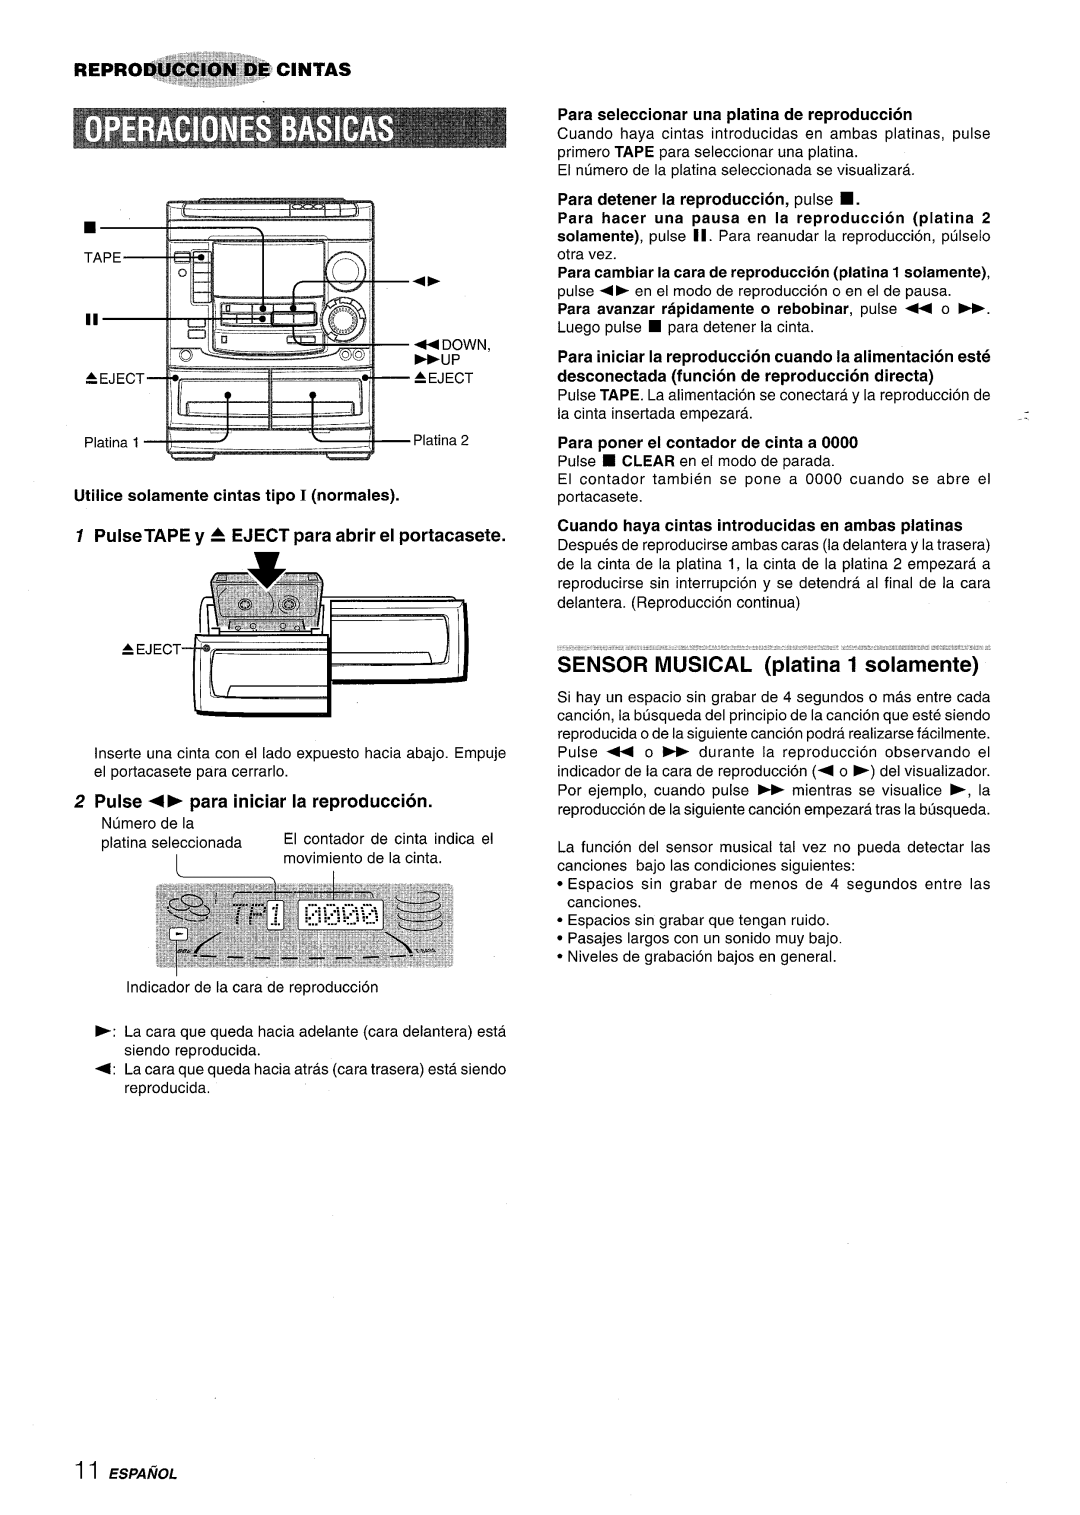 Aiwa NSX-A508 manual Utilice solamente cintas tipo I normales, PulseTAPE y A EJECT para abrir el portacasete 